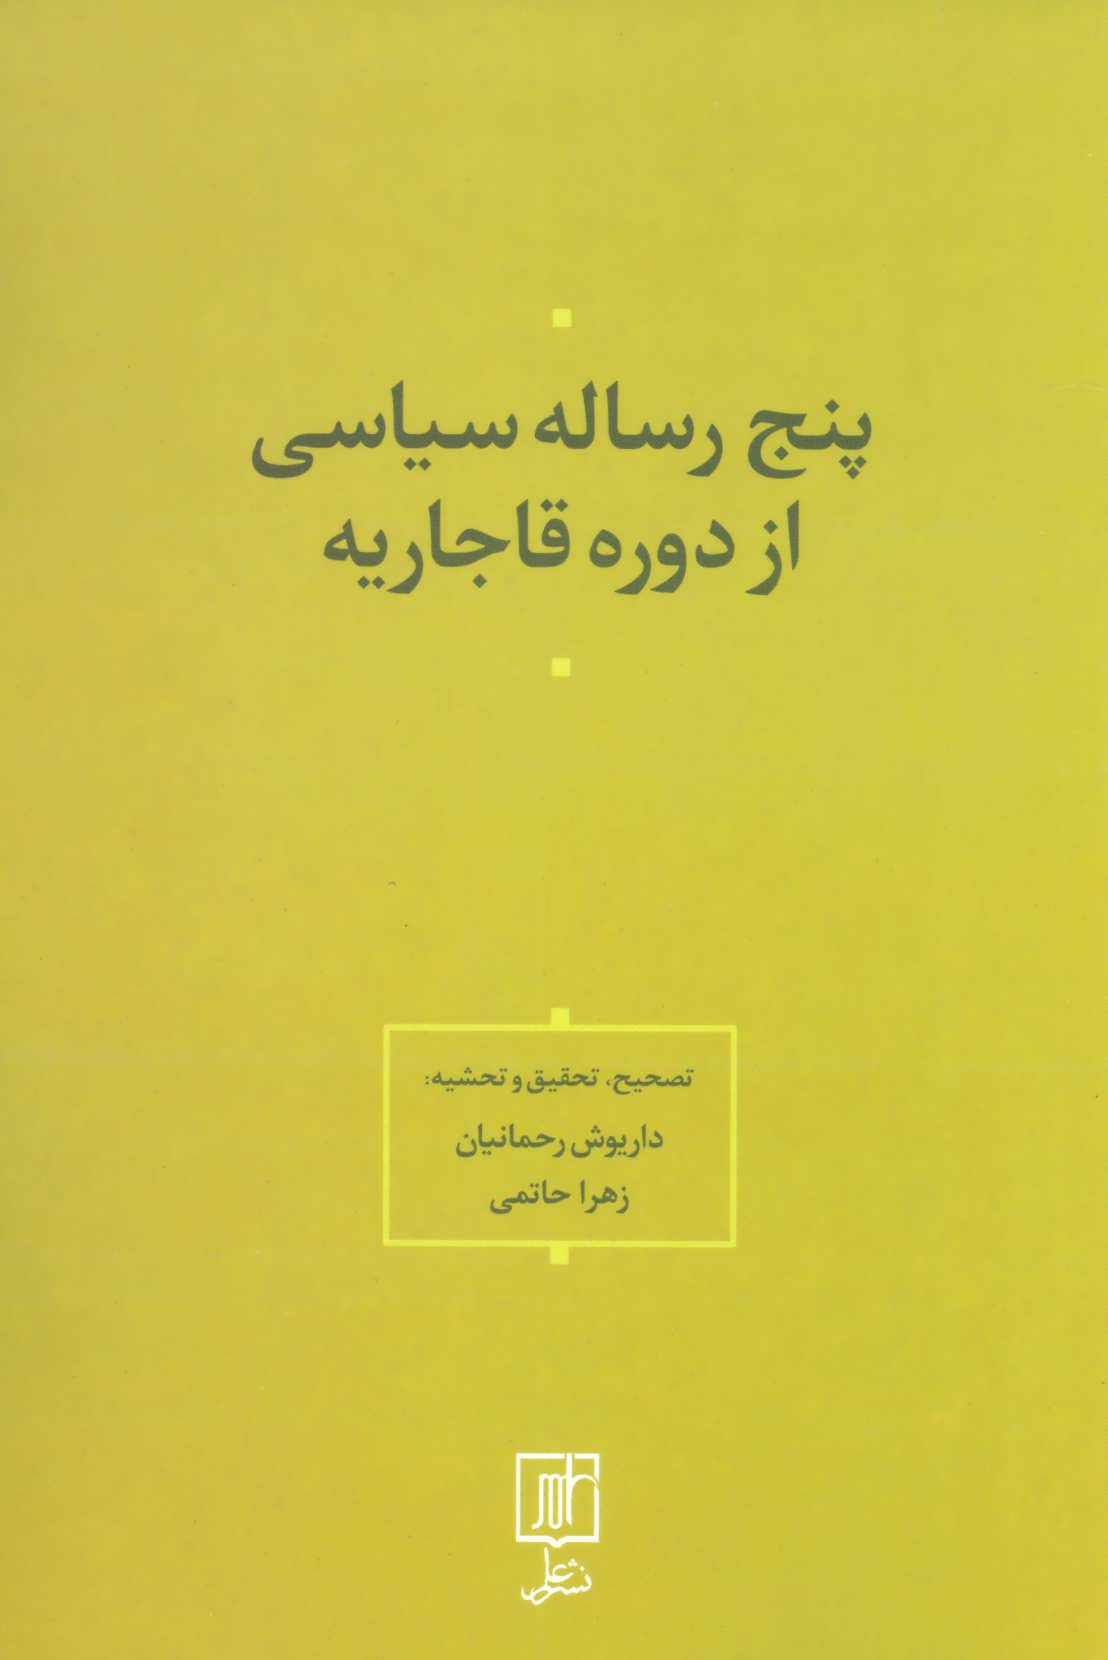 کتاب پنج رساله سیاسی از دوره قاجاریه